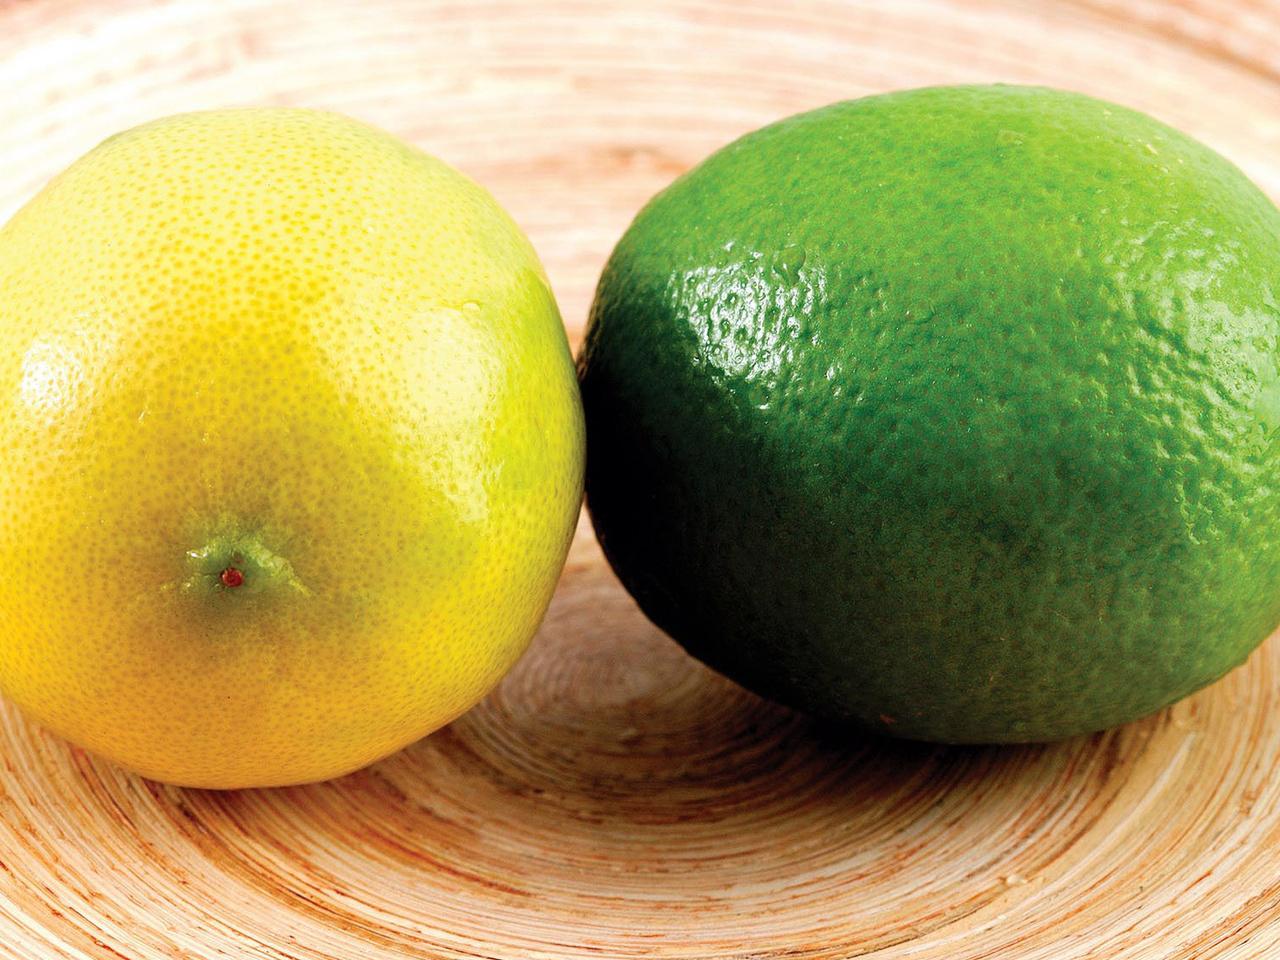 обои Кислые лимоны фото